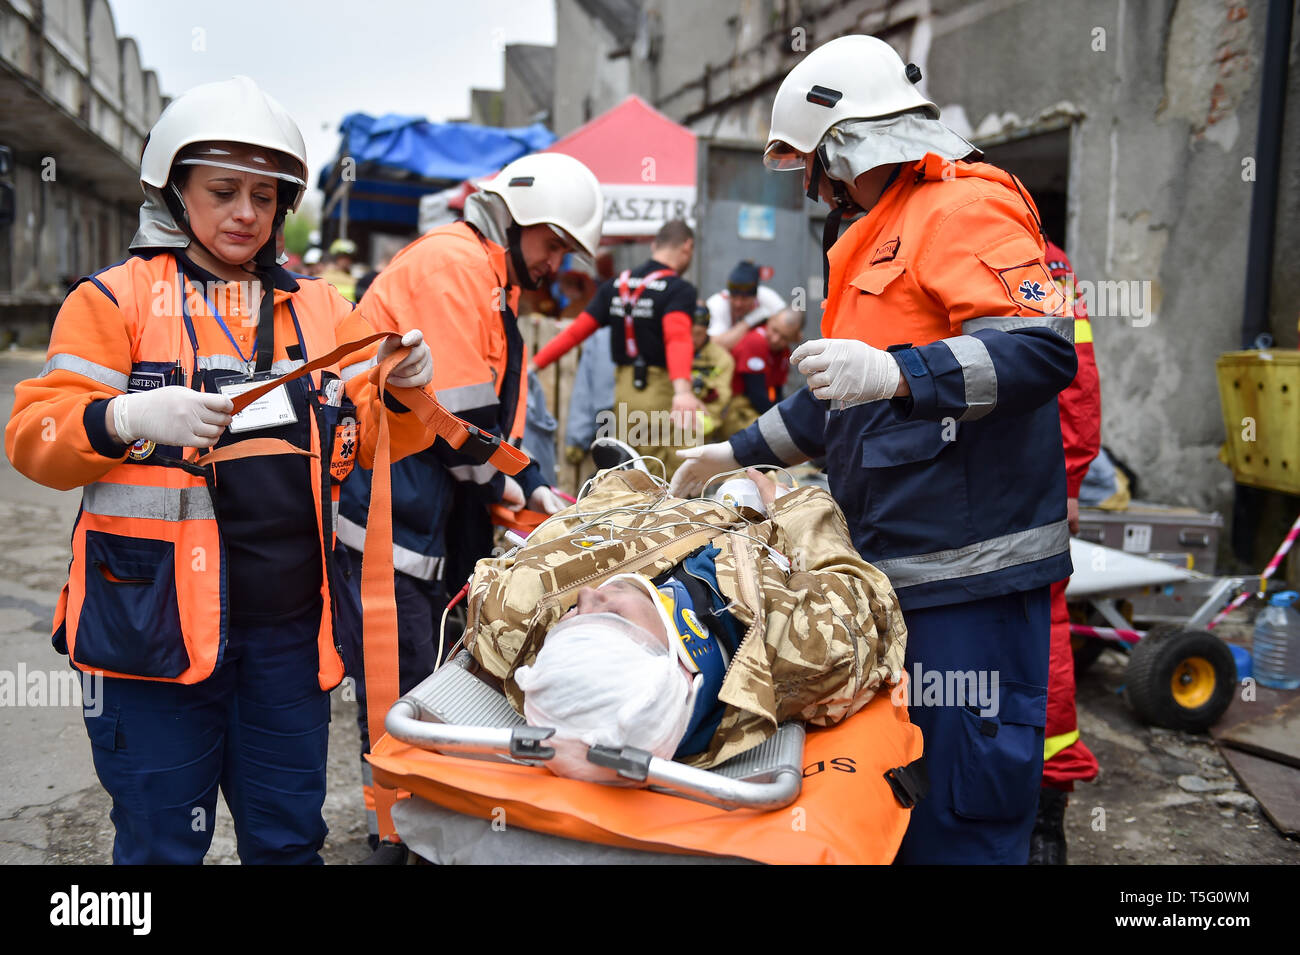 Bucarest, Roumanie - 10 avril 2019 : l'équipe de sauvetage d'urgence en action au cours de l'exercice médical les plus complexes dans l'histoire de l'OTAN, guerrier vigoureux Banque D'Images